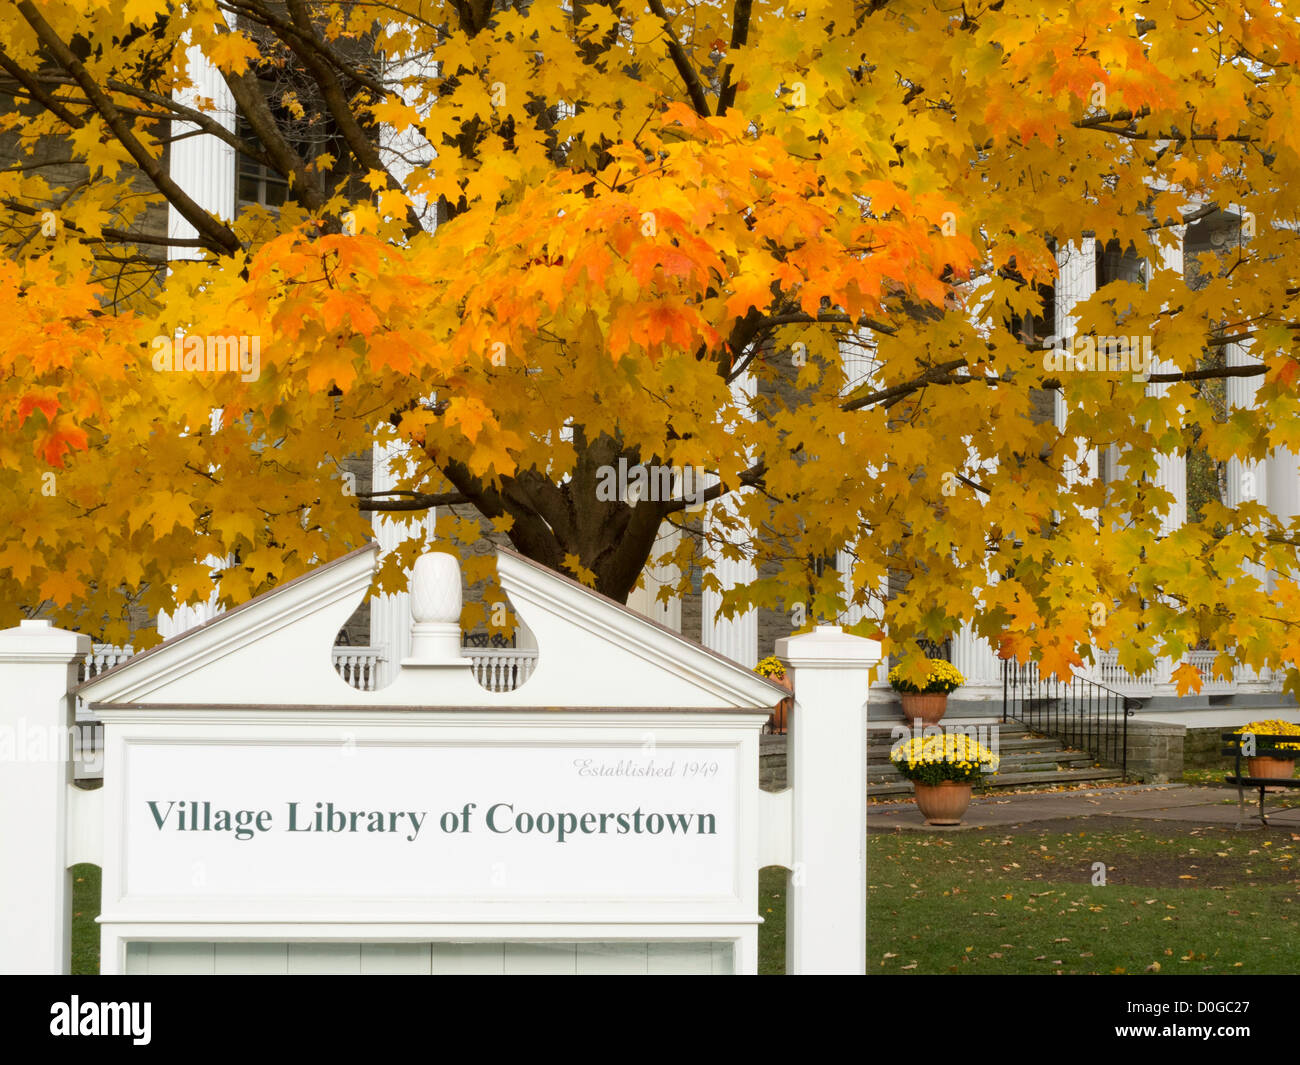 Dorf von Cooperstown Bibliothek Zeichen mit Herbstlaub, USA Stockfoto